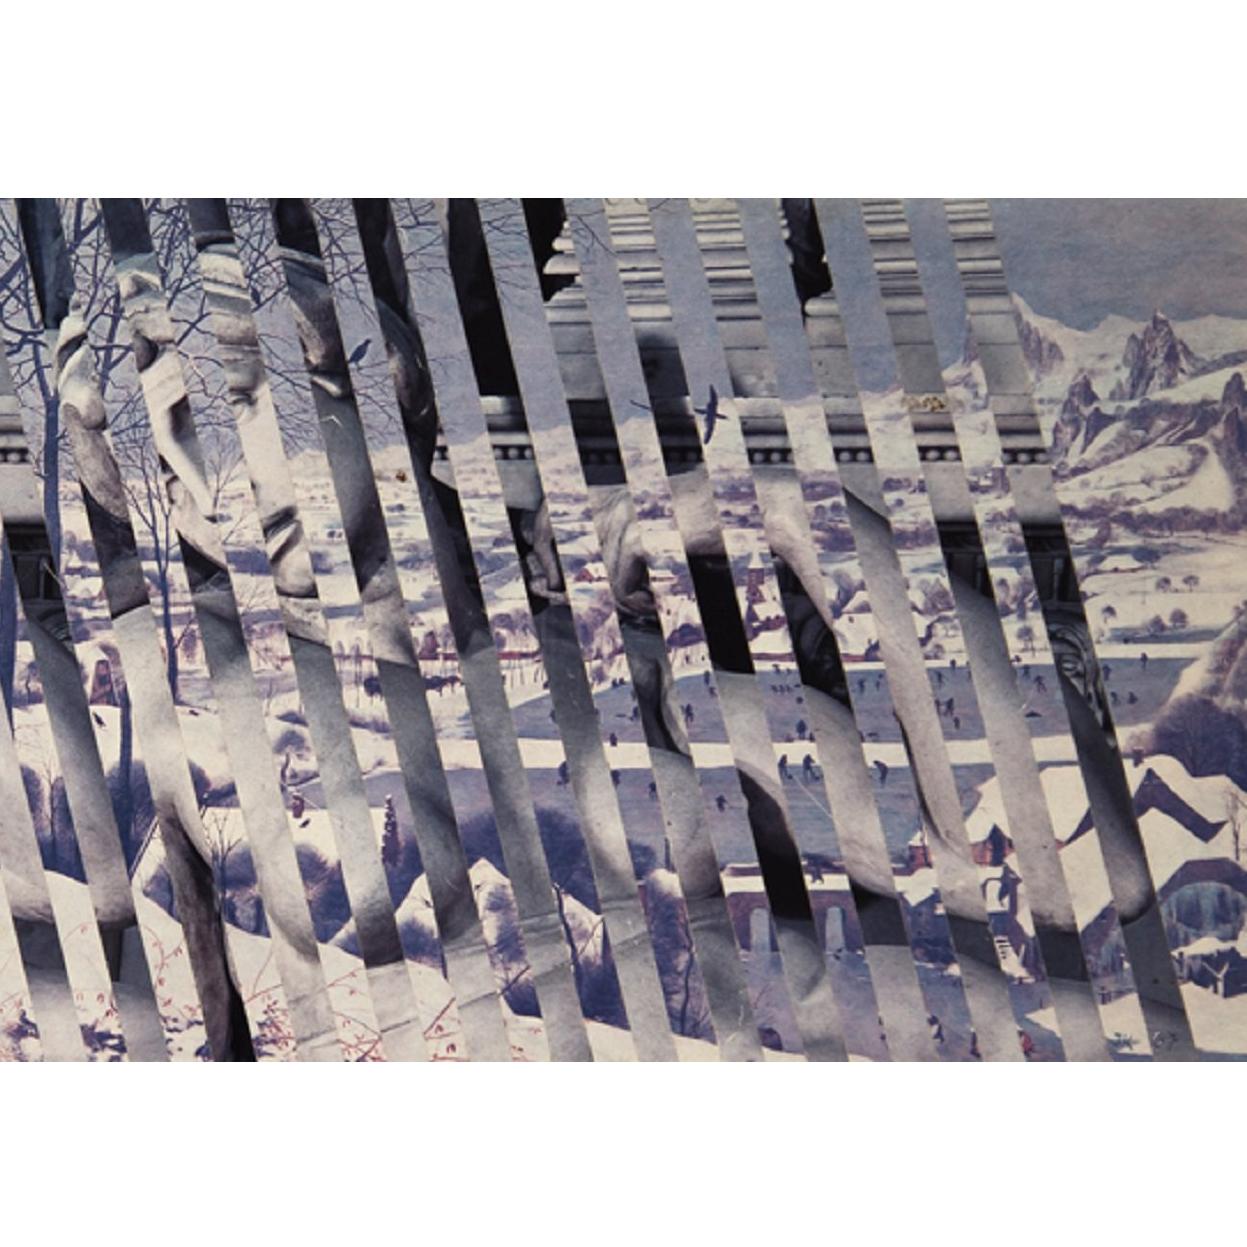 UNBETITELT (ROLLLAGE)
Jiri Kolar
Gemischte Medien, 1967

Rollage aus einer Skulptur von Michelangelo und einem Gemälde von Bruegel
Medium: Gemischte Medien, Collage
Oberfläche: Fotopapier
Land: Tschechische Republik
Abmessungen: 6.75